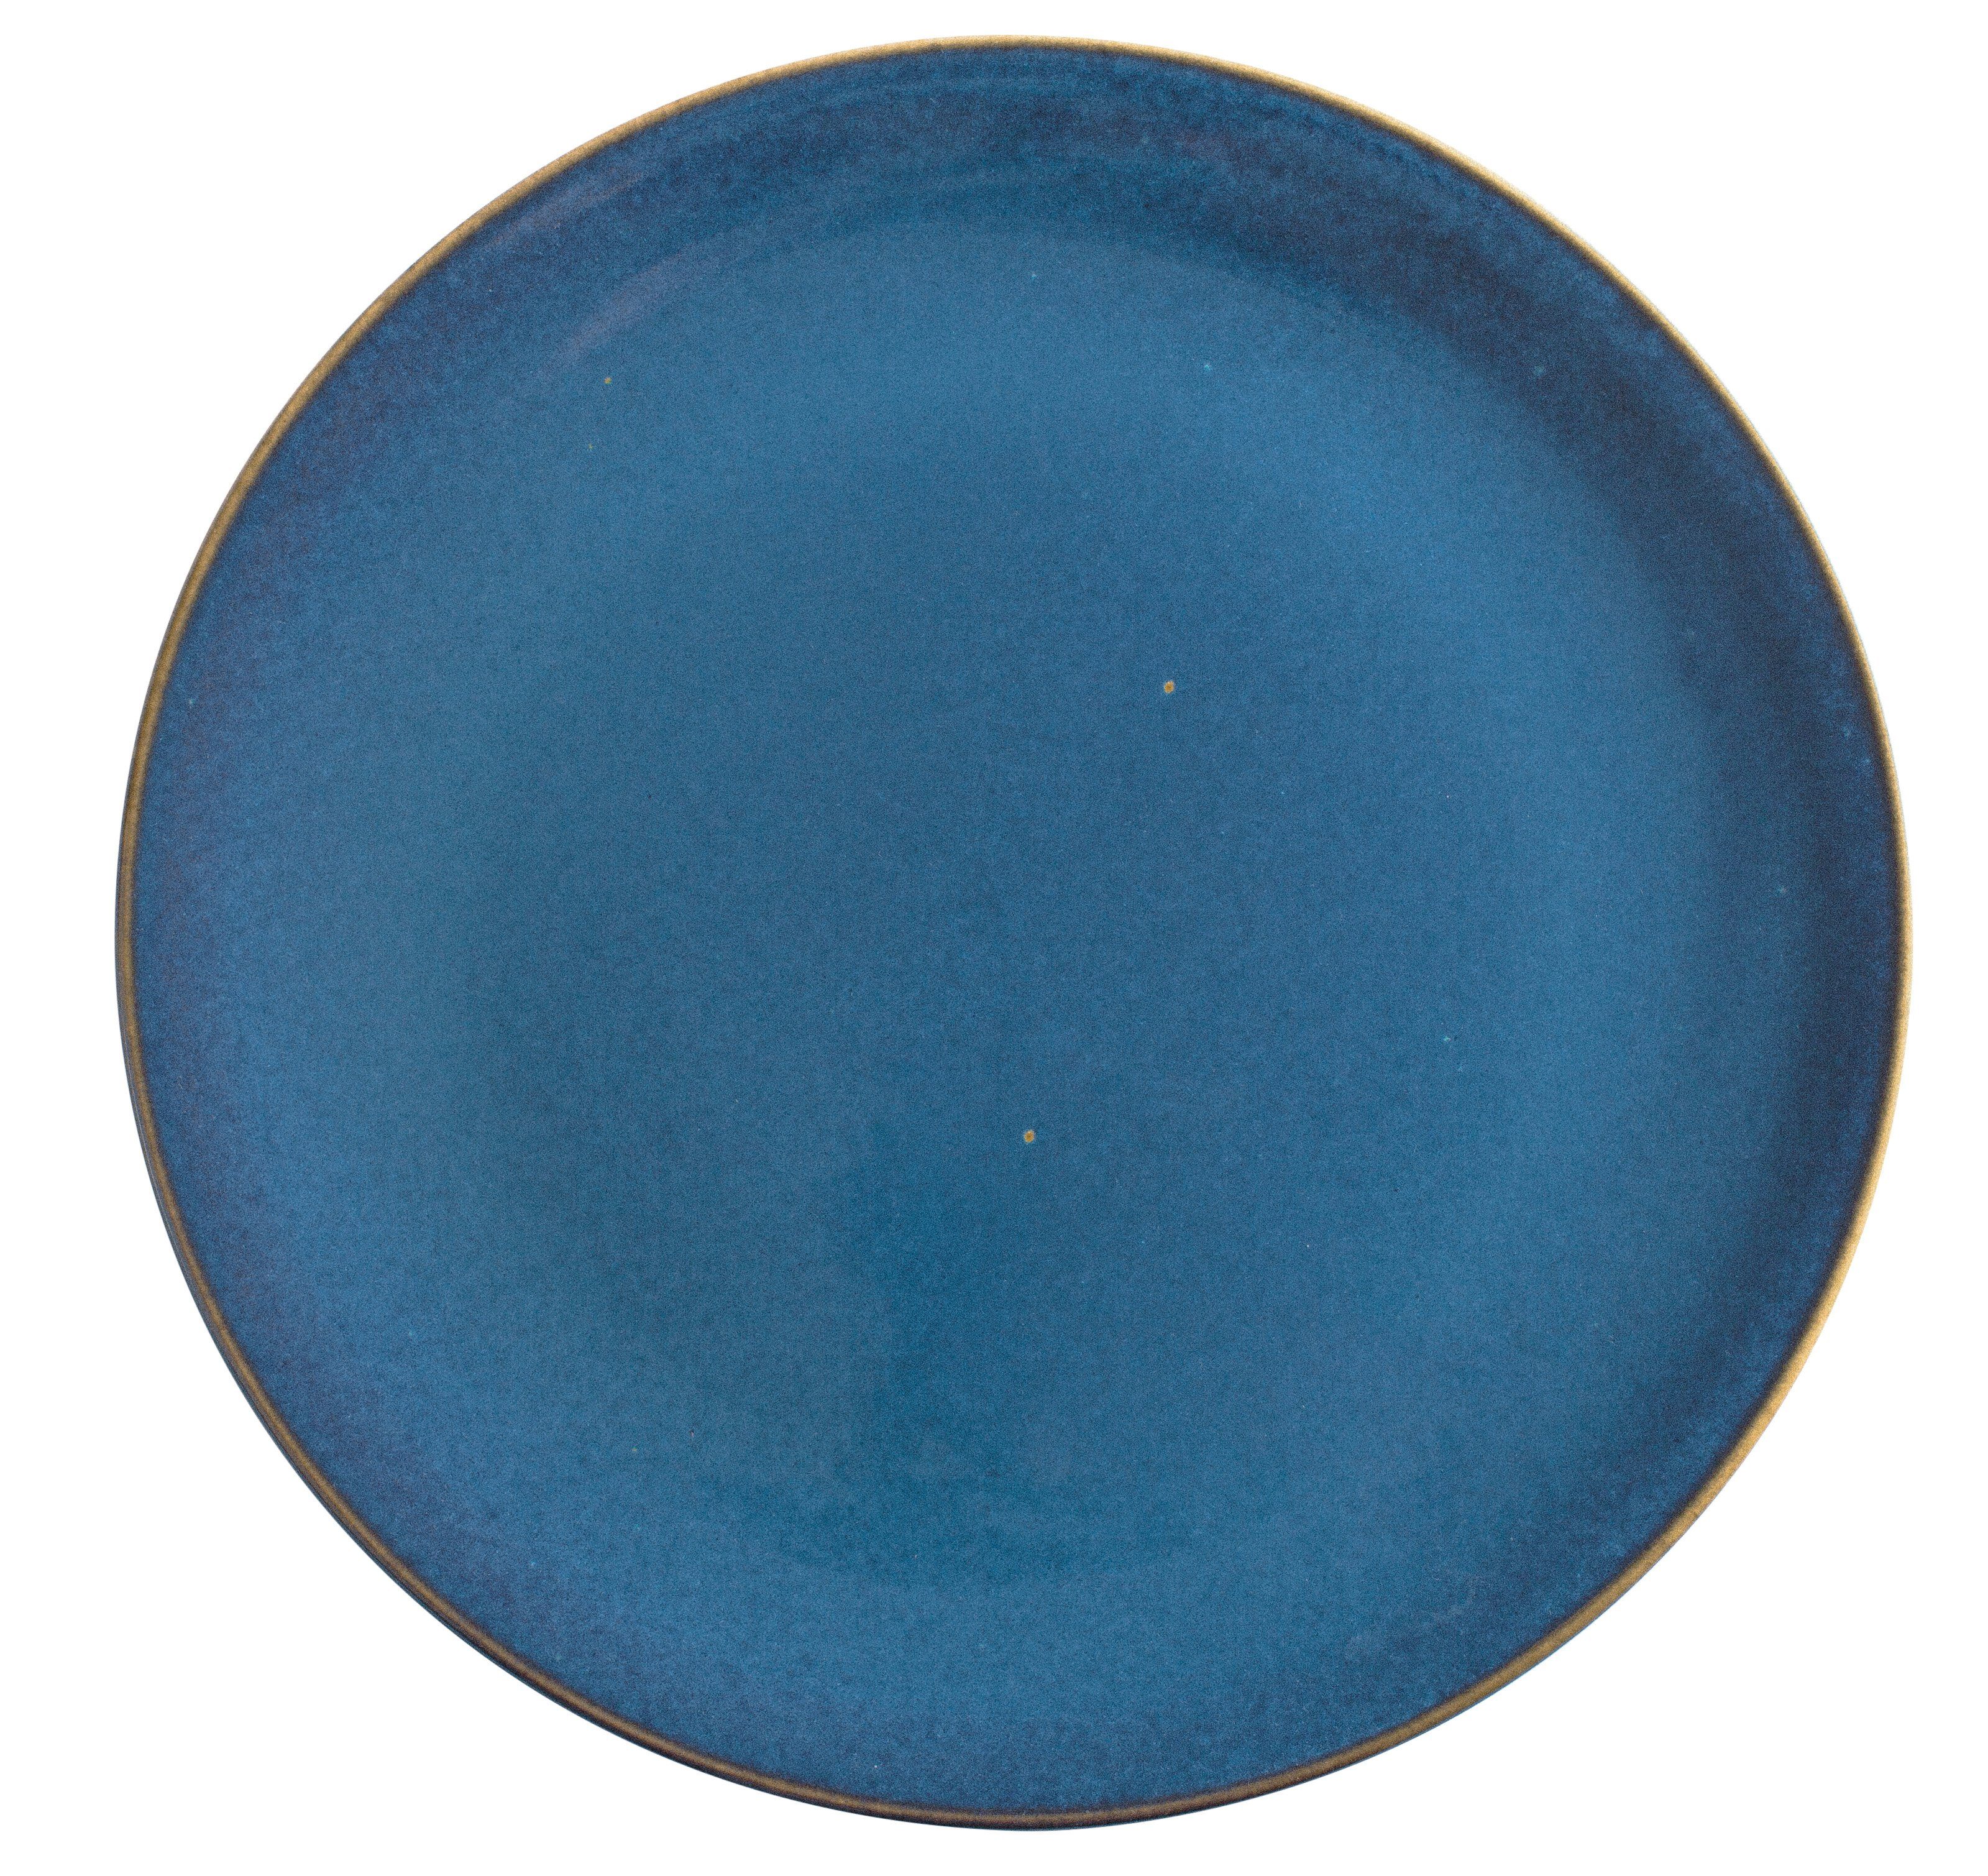 31 Germany Pizzateller blue Handglasiert, Kahla Homestyle atlantic cm, Made in